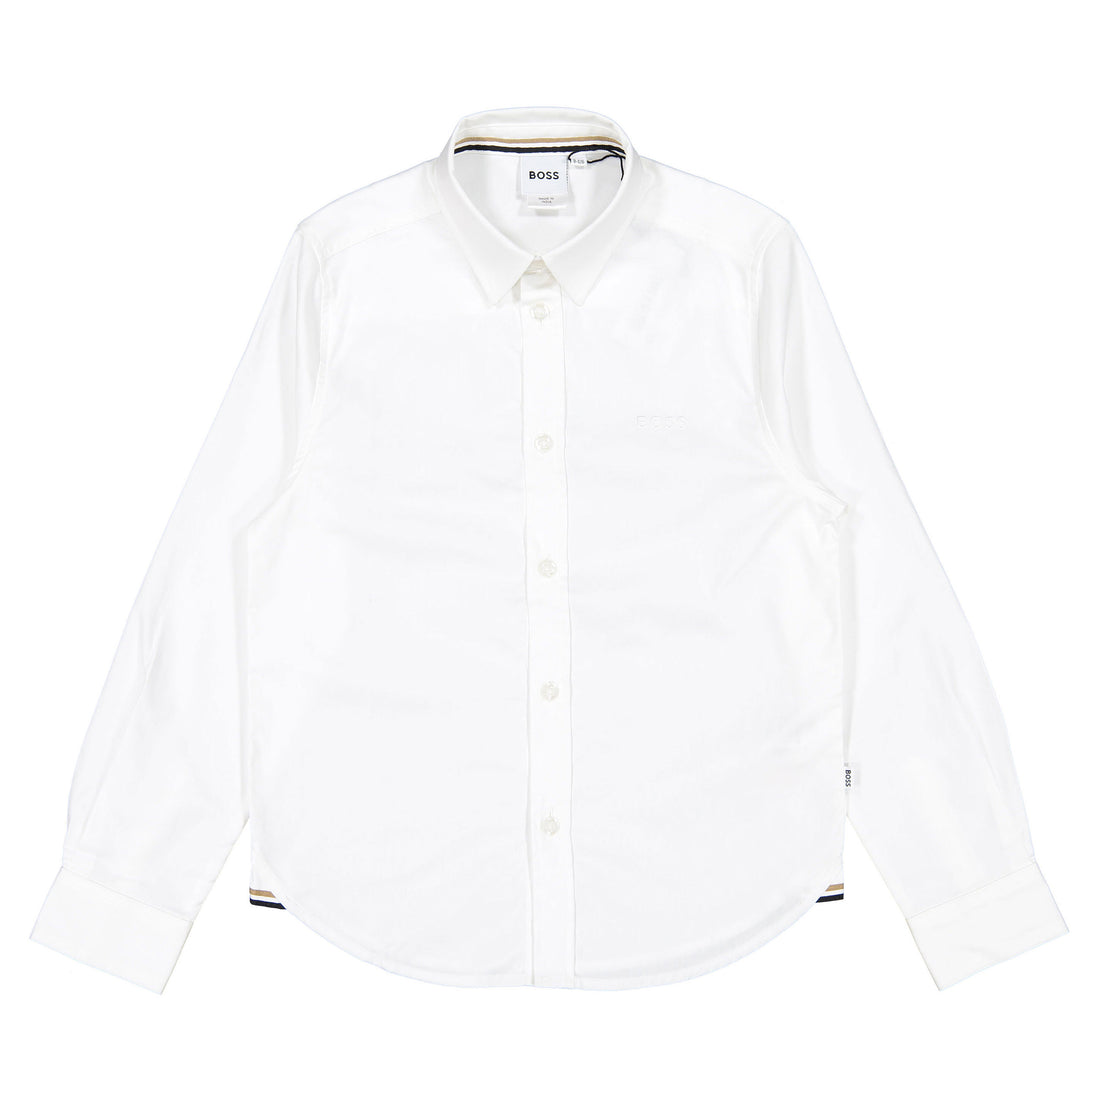 Hugo Boss White Long Sleeved Dress Shirt